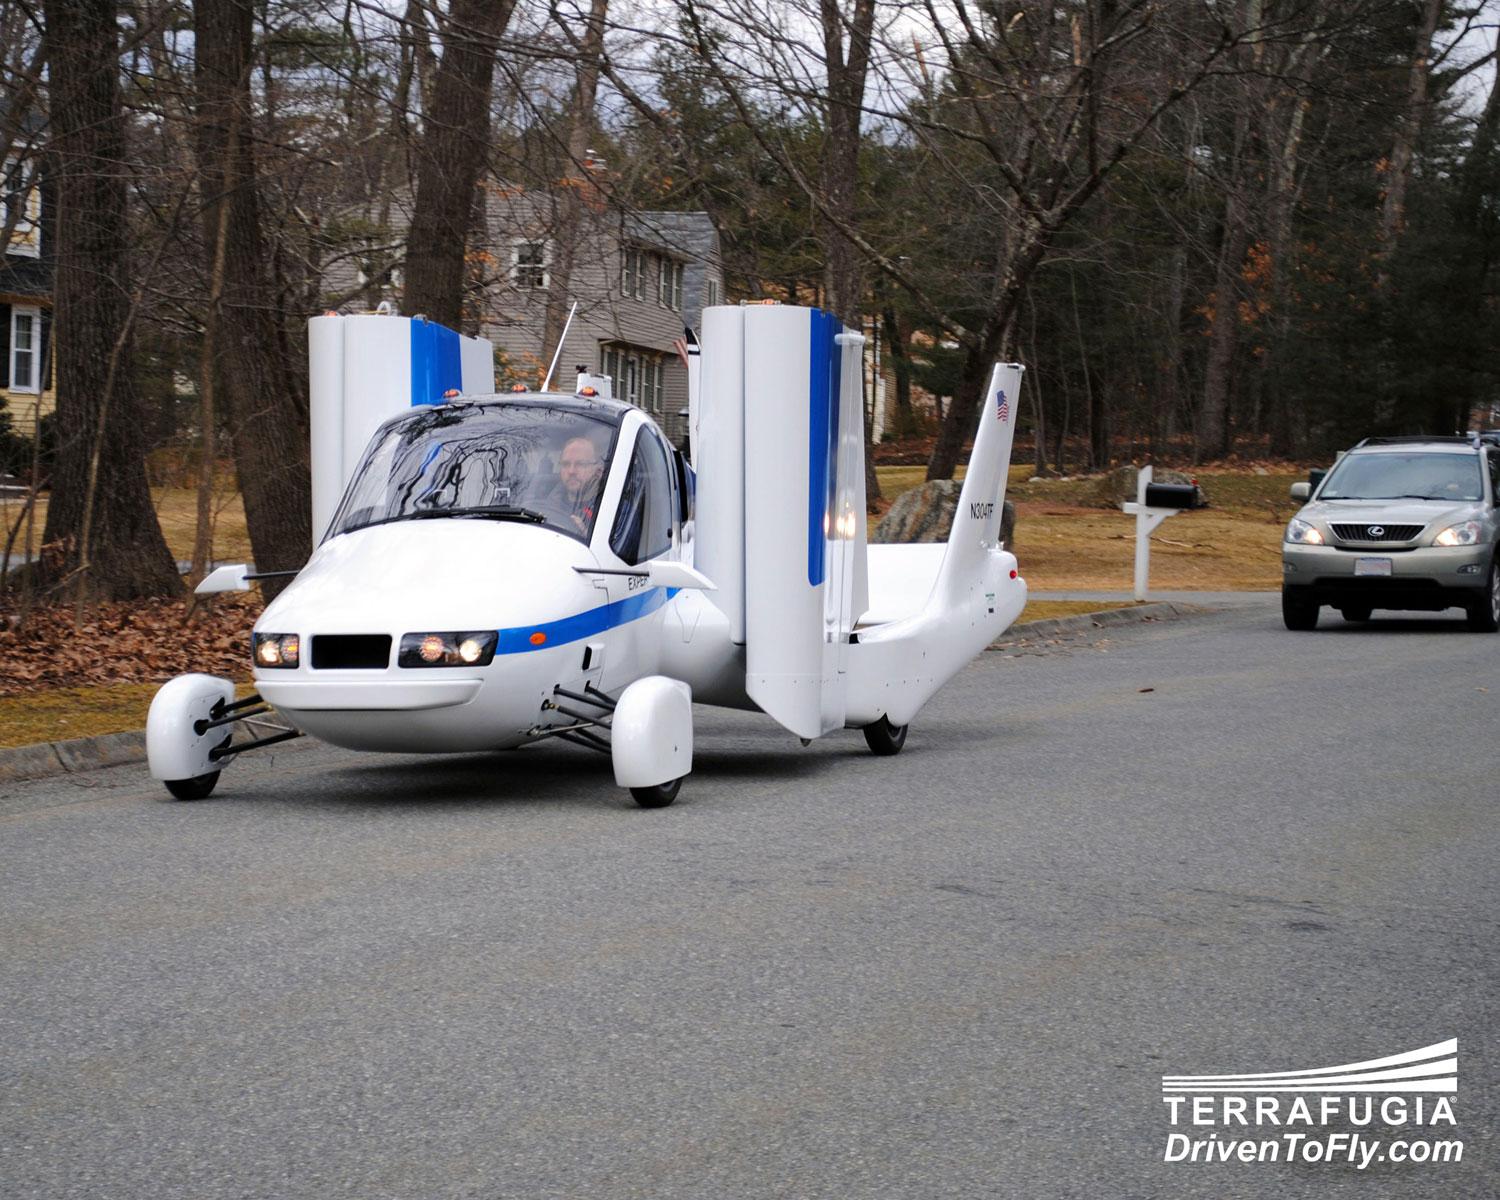 PÅ VEIEN: Den flyvende bilen skal være fullt mulig, og lovlig, å ta ut på vanlige veier.Foto: Terrafugia.com